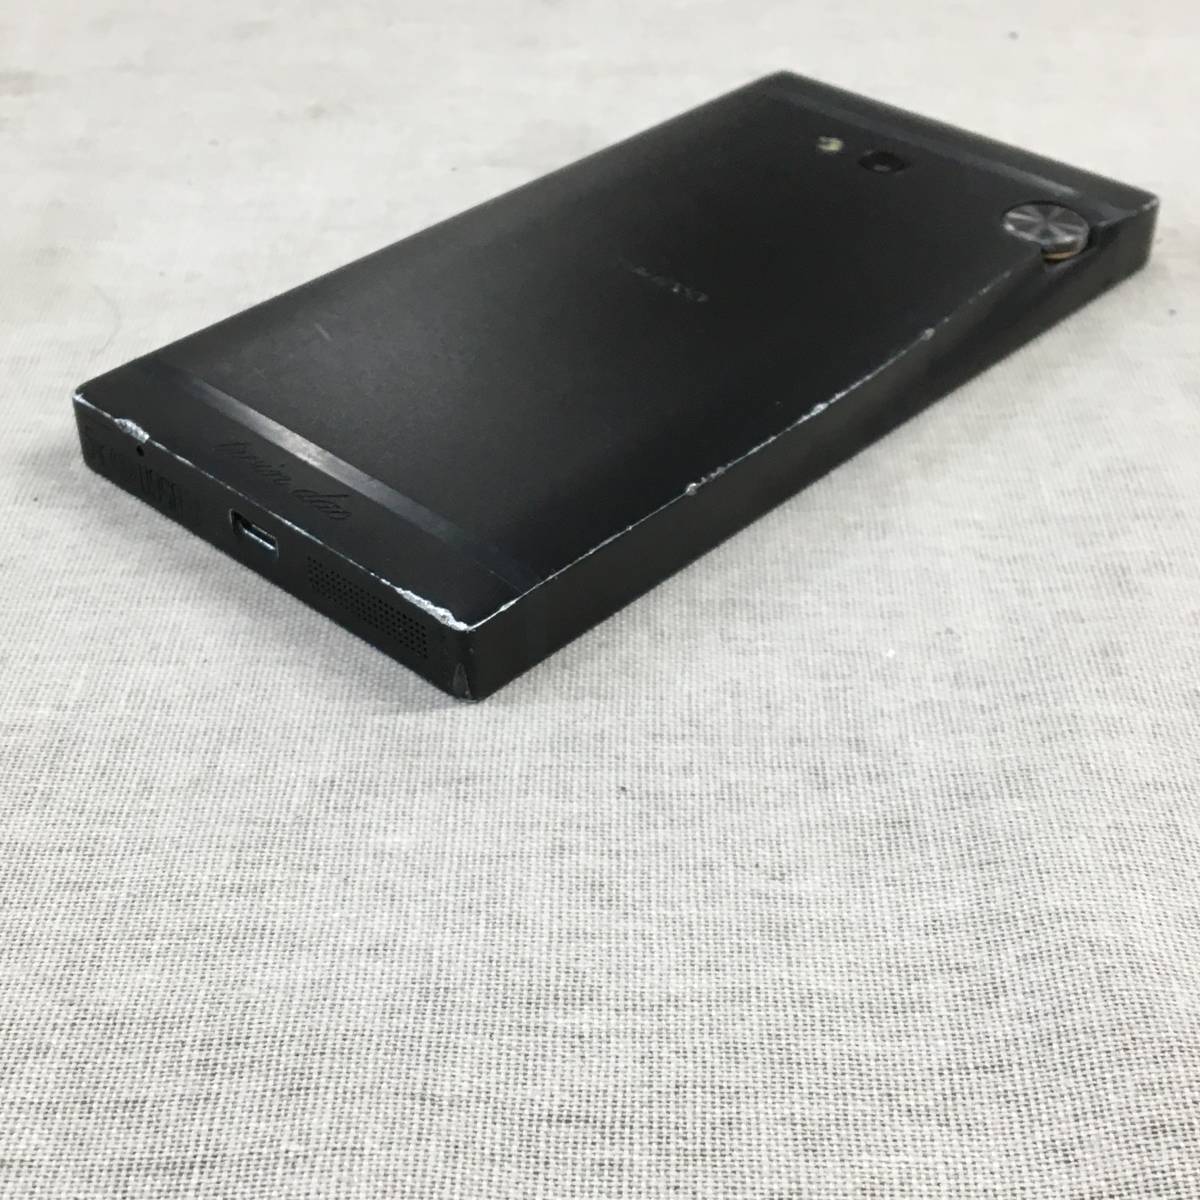  текущее состояние товар ONKYO GRANBEAT в высоком разрешени аудио смартфон DP-CMX1(B)SIM свободный 128 GB